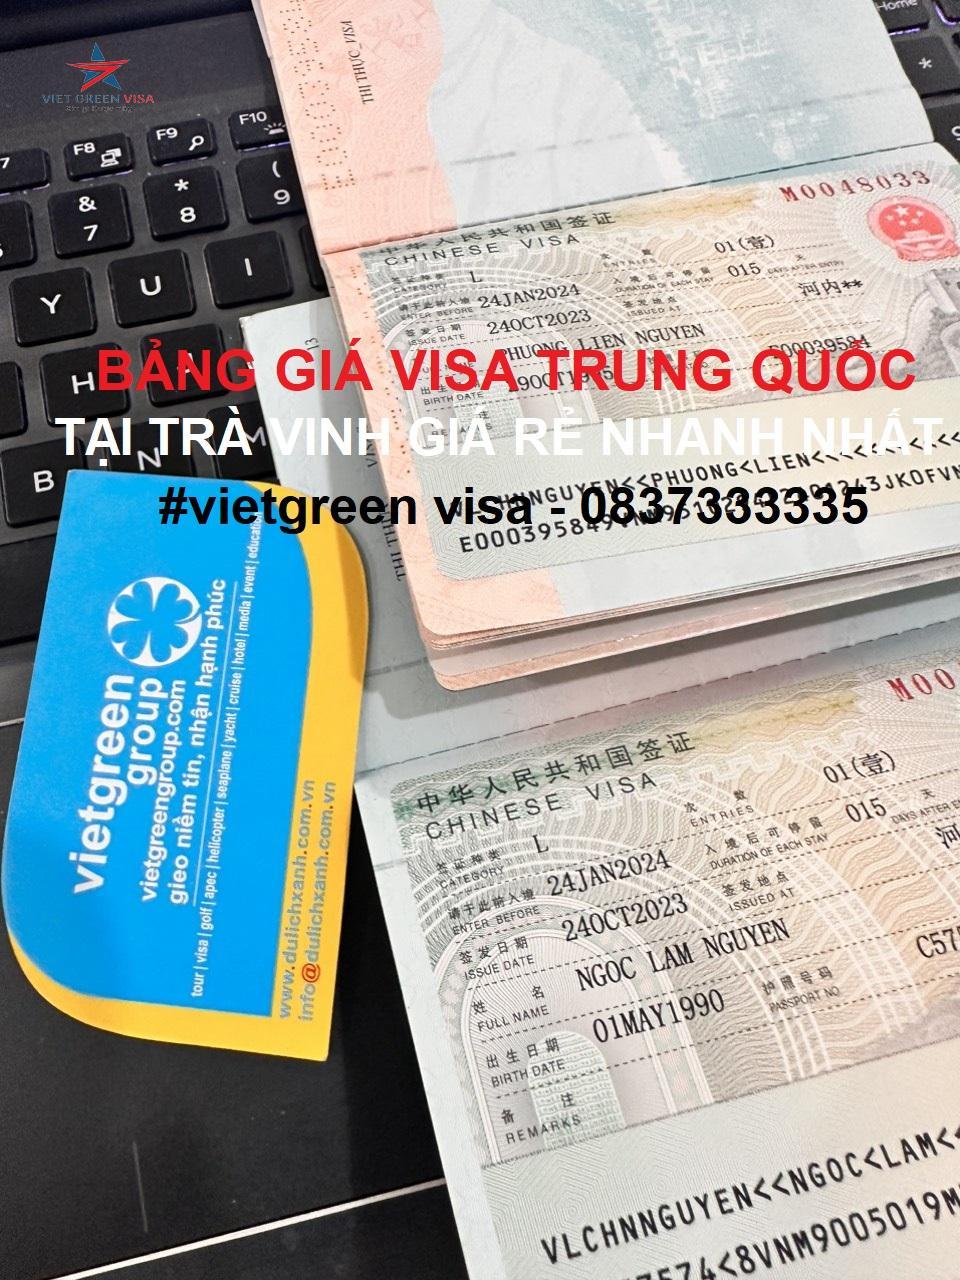 Dịch vụ xin visa Trung Quốc tại Trà Vinh trọn gói nhanh nhất